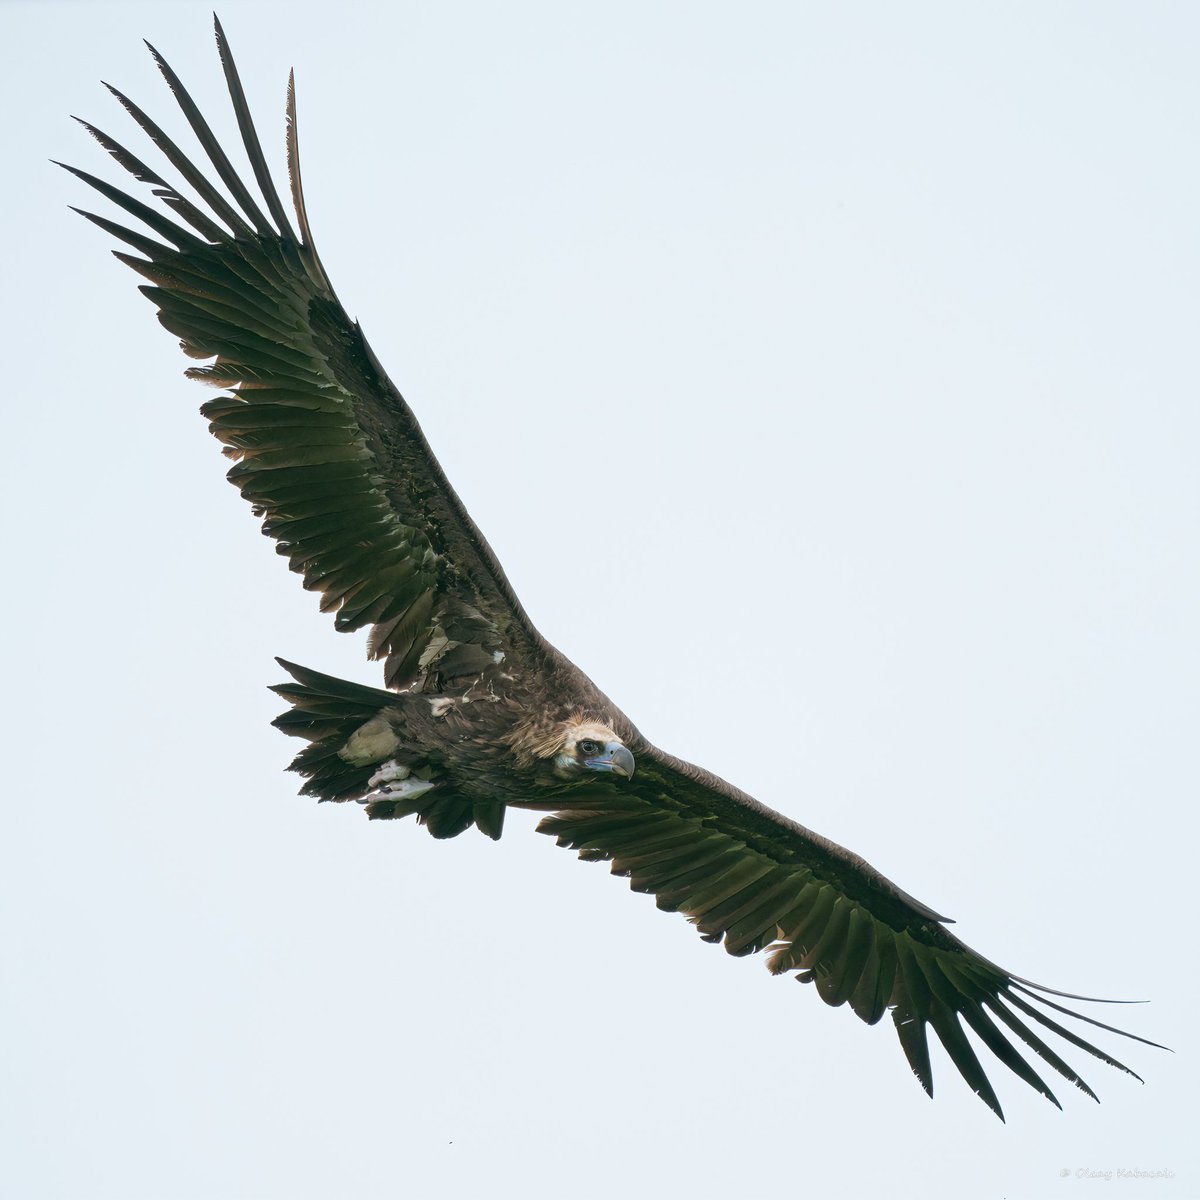 Cinereous Vulture. Largest vulture in Europe.
Kara Akbaba. Avrupanın en büyük akbabası.

#hangitür #birdphotography #wildlife